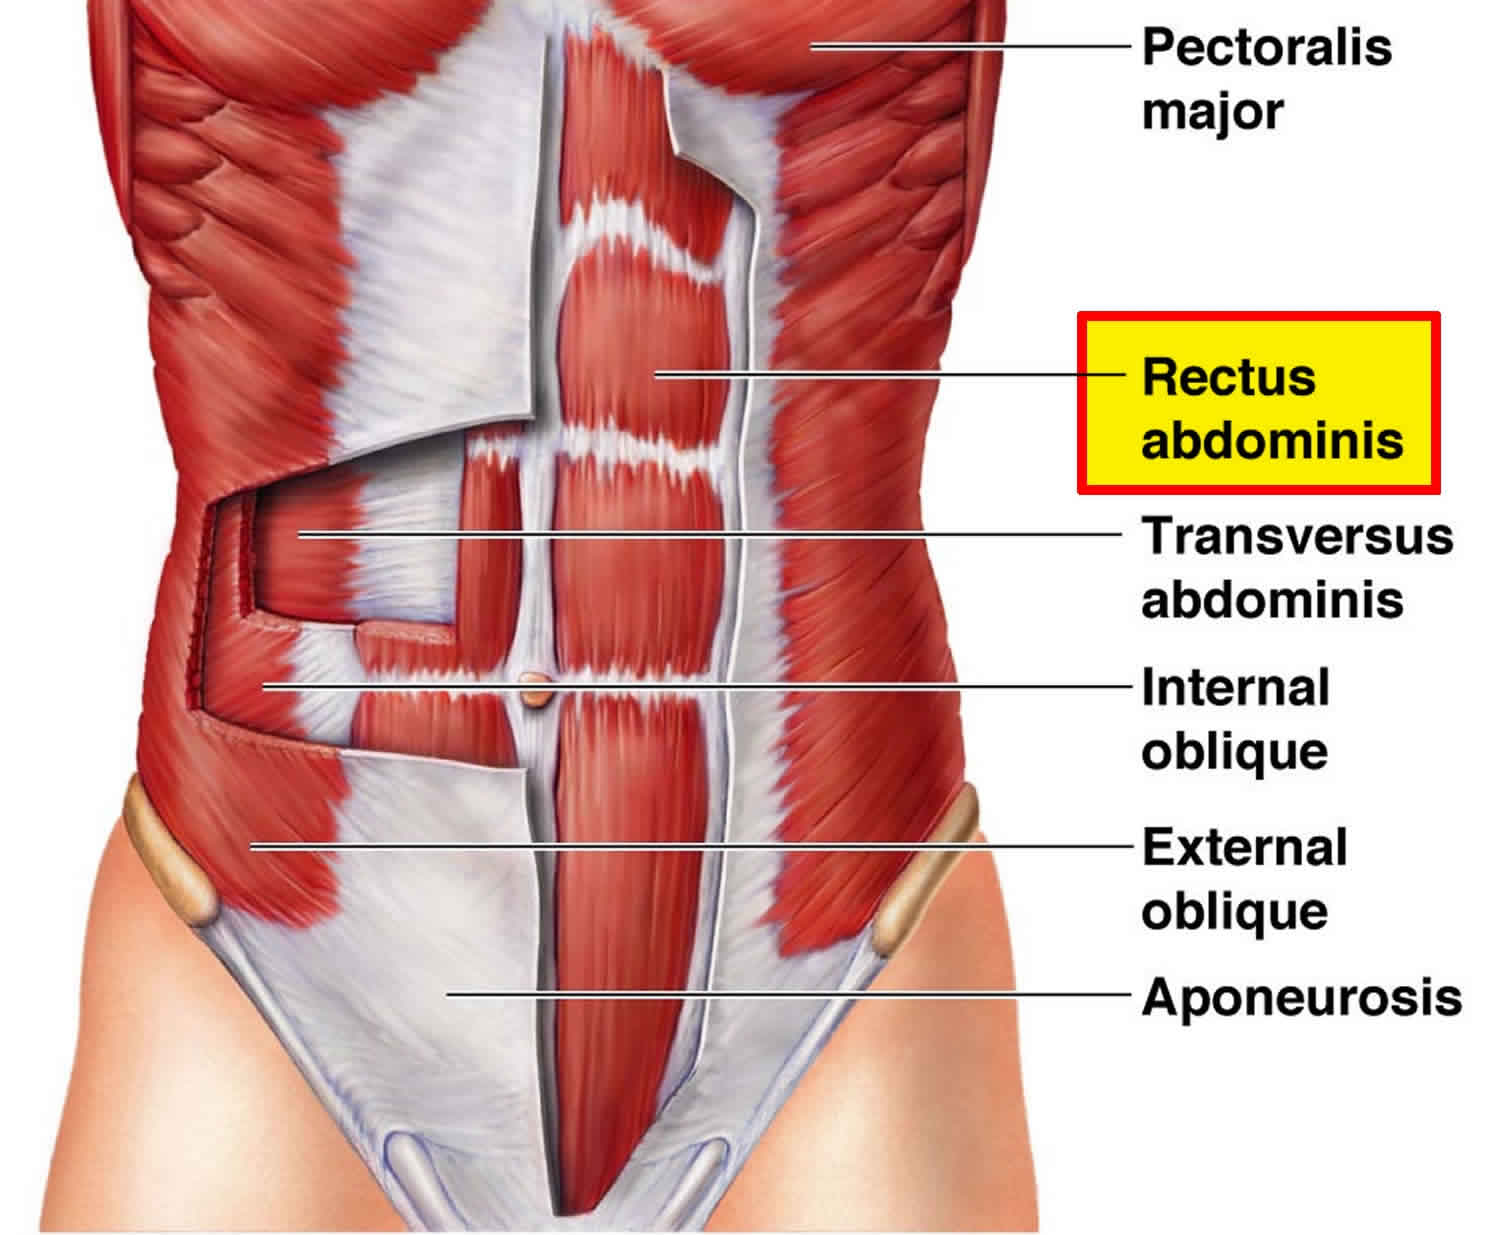 Rectus abdominis muscles